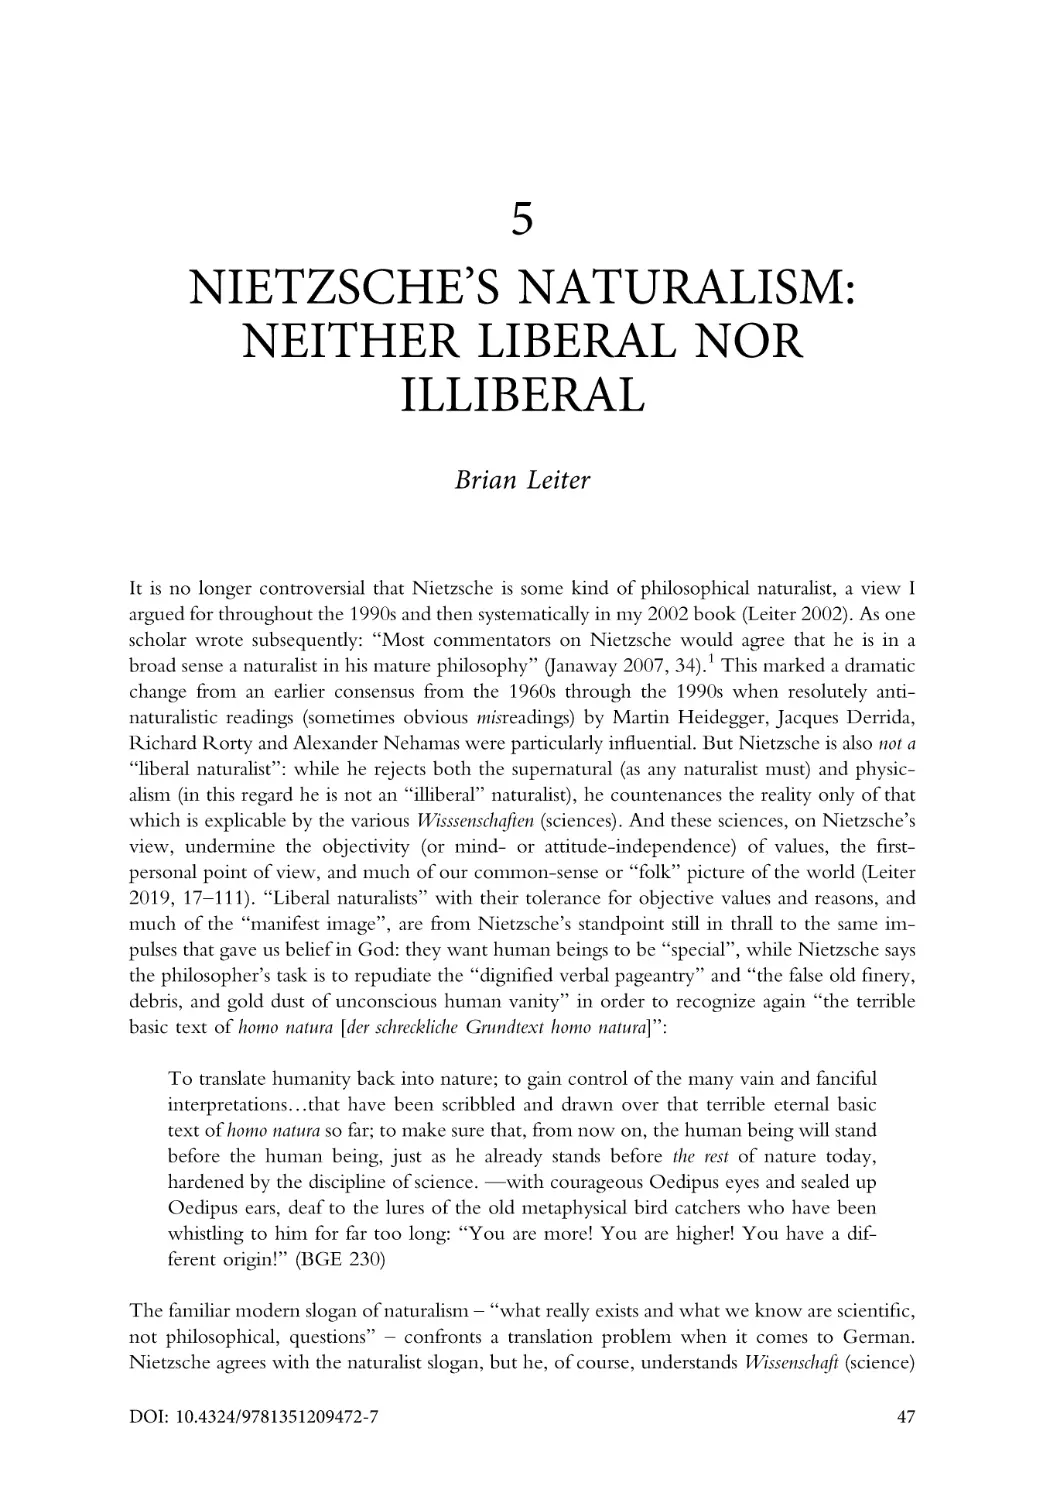 5. Nietzsche's naturalism